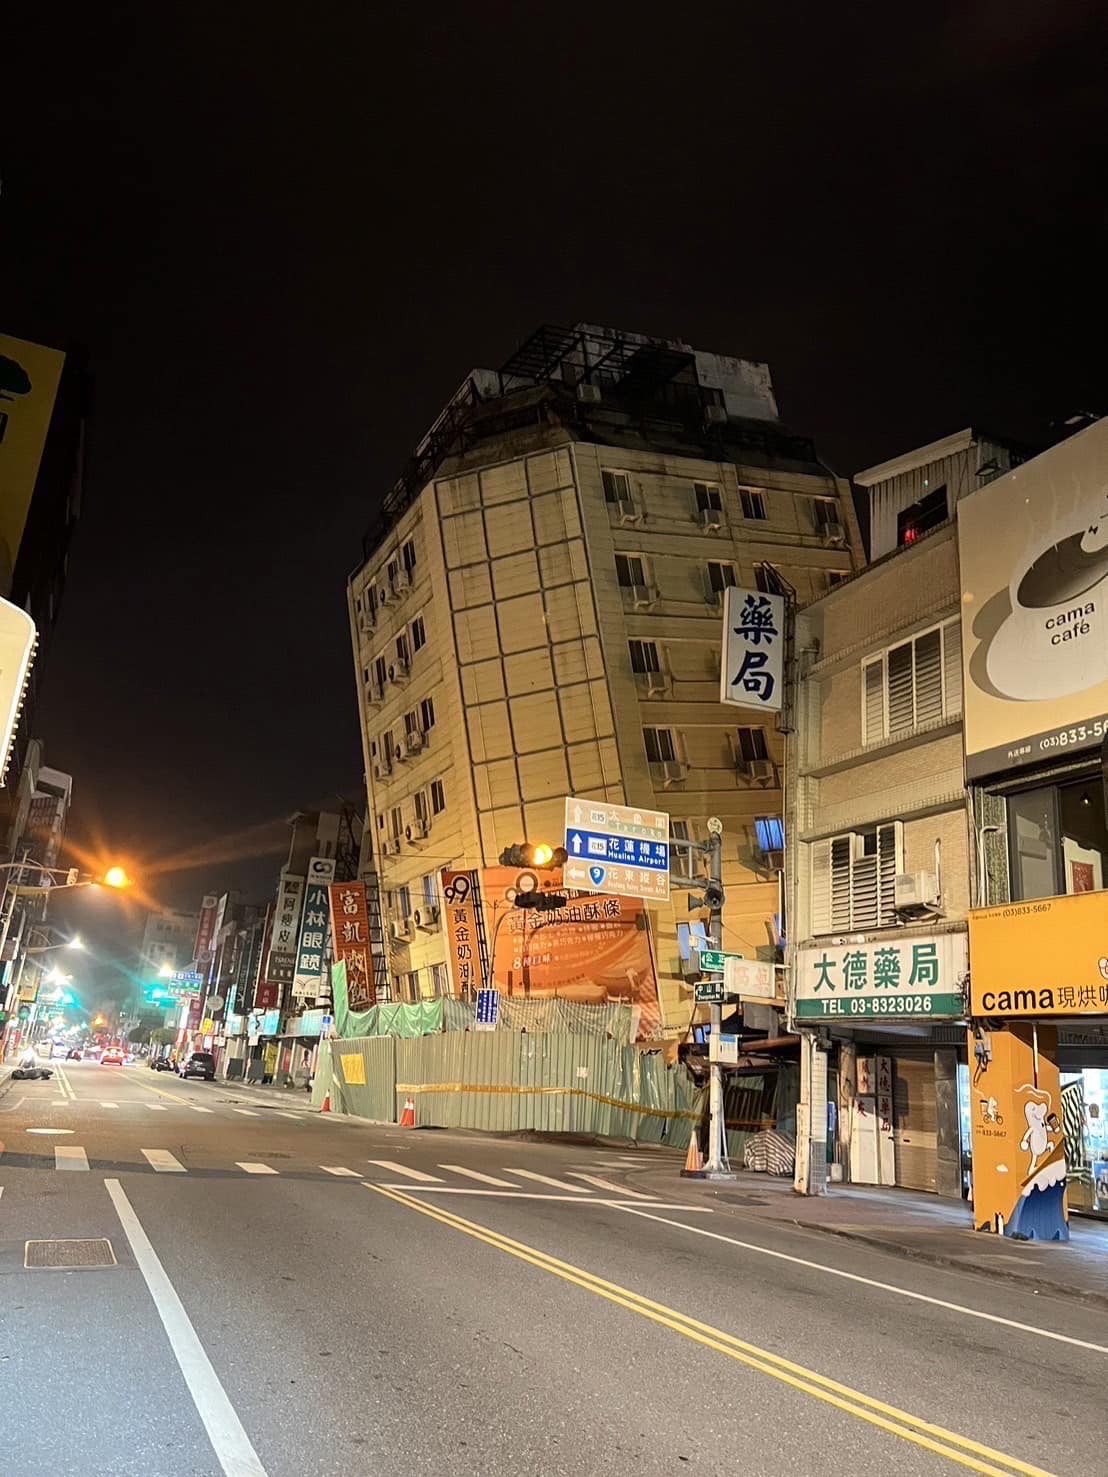 ALERTE SEISME : Taïwan frappé de nouveau par des séismes d'une magnitude supérieure à 6 sur l'échelle de Richter